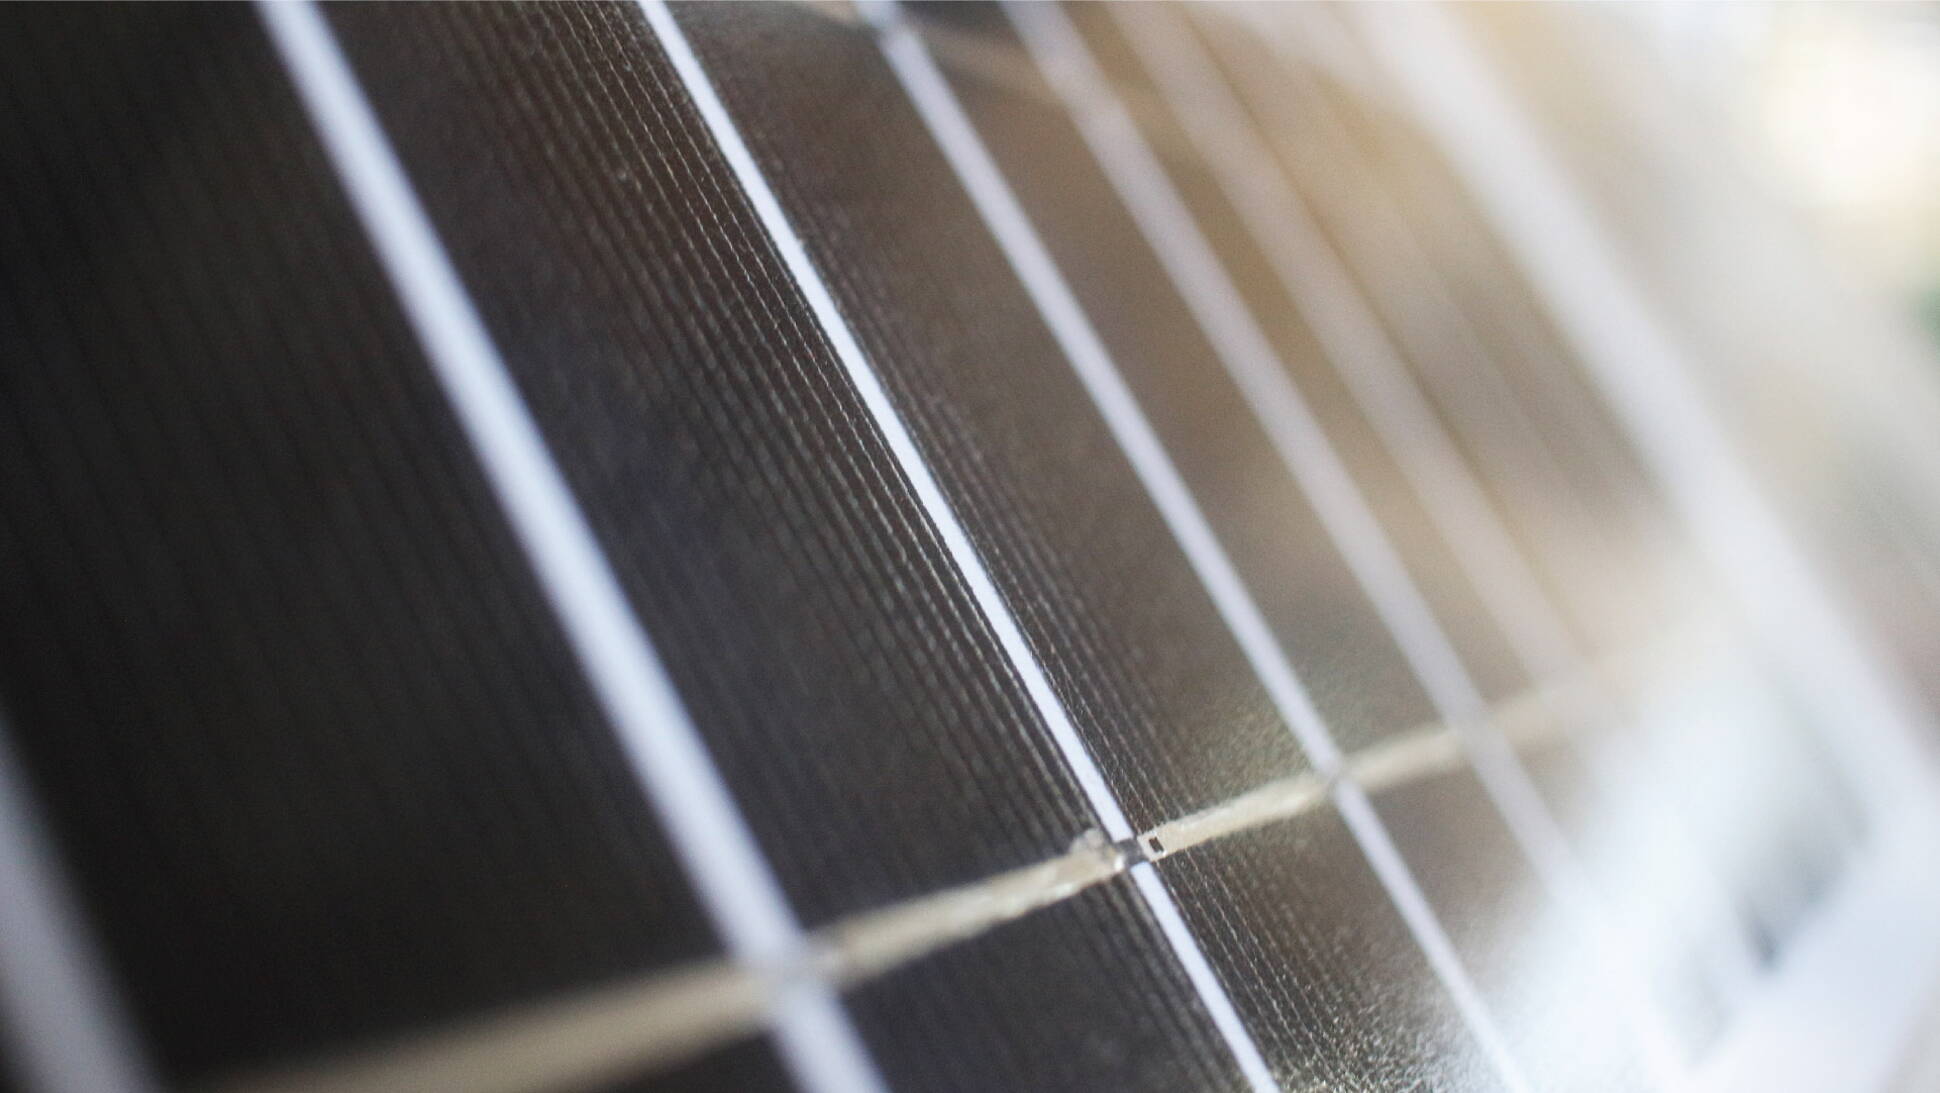 Científicos argentinos descubren nuevos materiales para aprovechar la energía solar